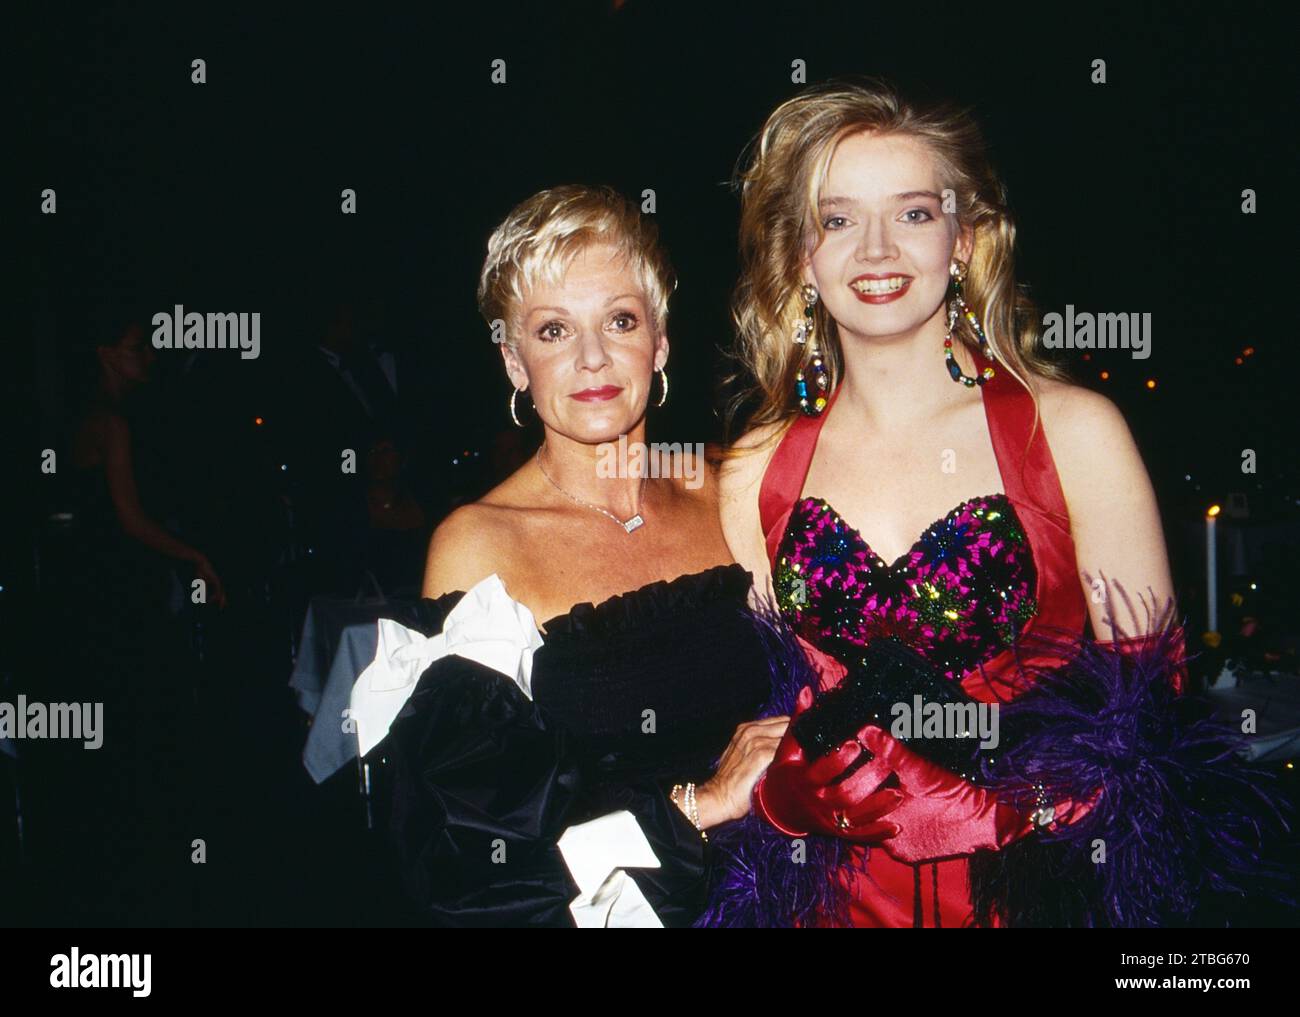 Schauspielerin Anita Kupsch mit Schauspiel-Kollegin Julia Biedermann, beide Spiele in der TV-Serie: Praxis Bülowbogen, Bild um 1996. Stockfoto